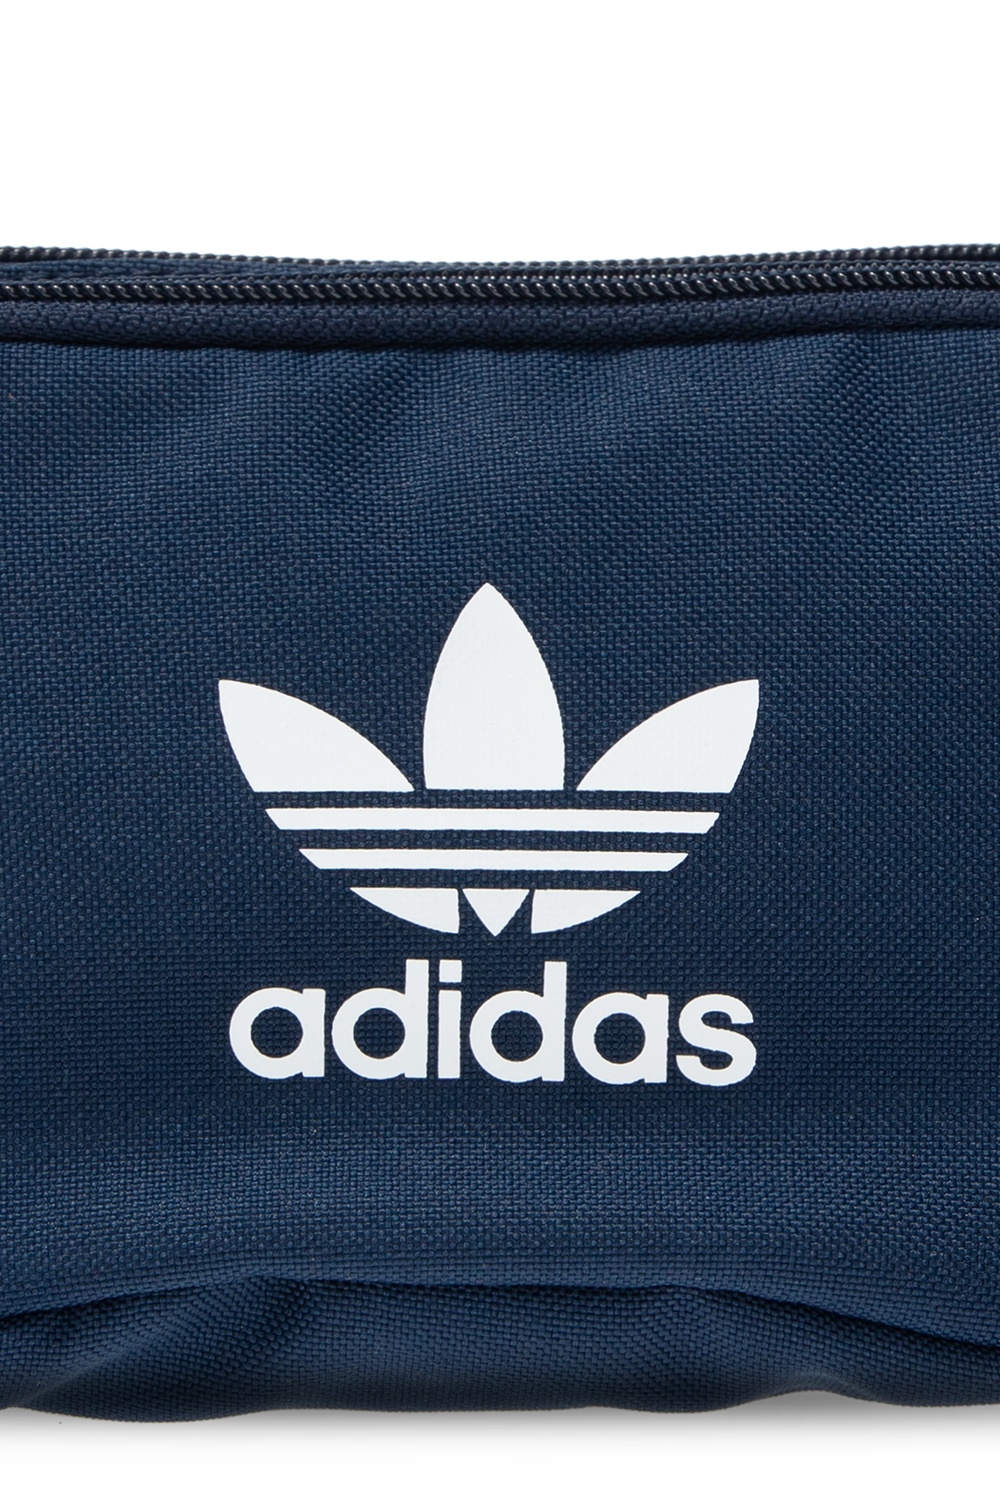 Адидас само. Адидас samo. Адидас Самза. Adidas samo. Adidas Bag Original the brand with 3 Stripes.